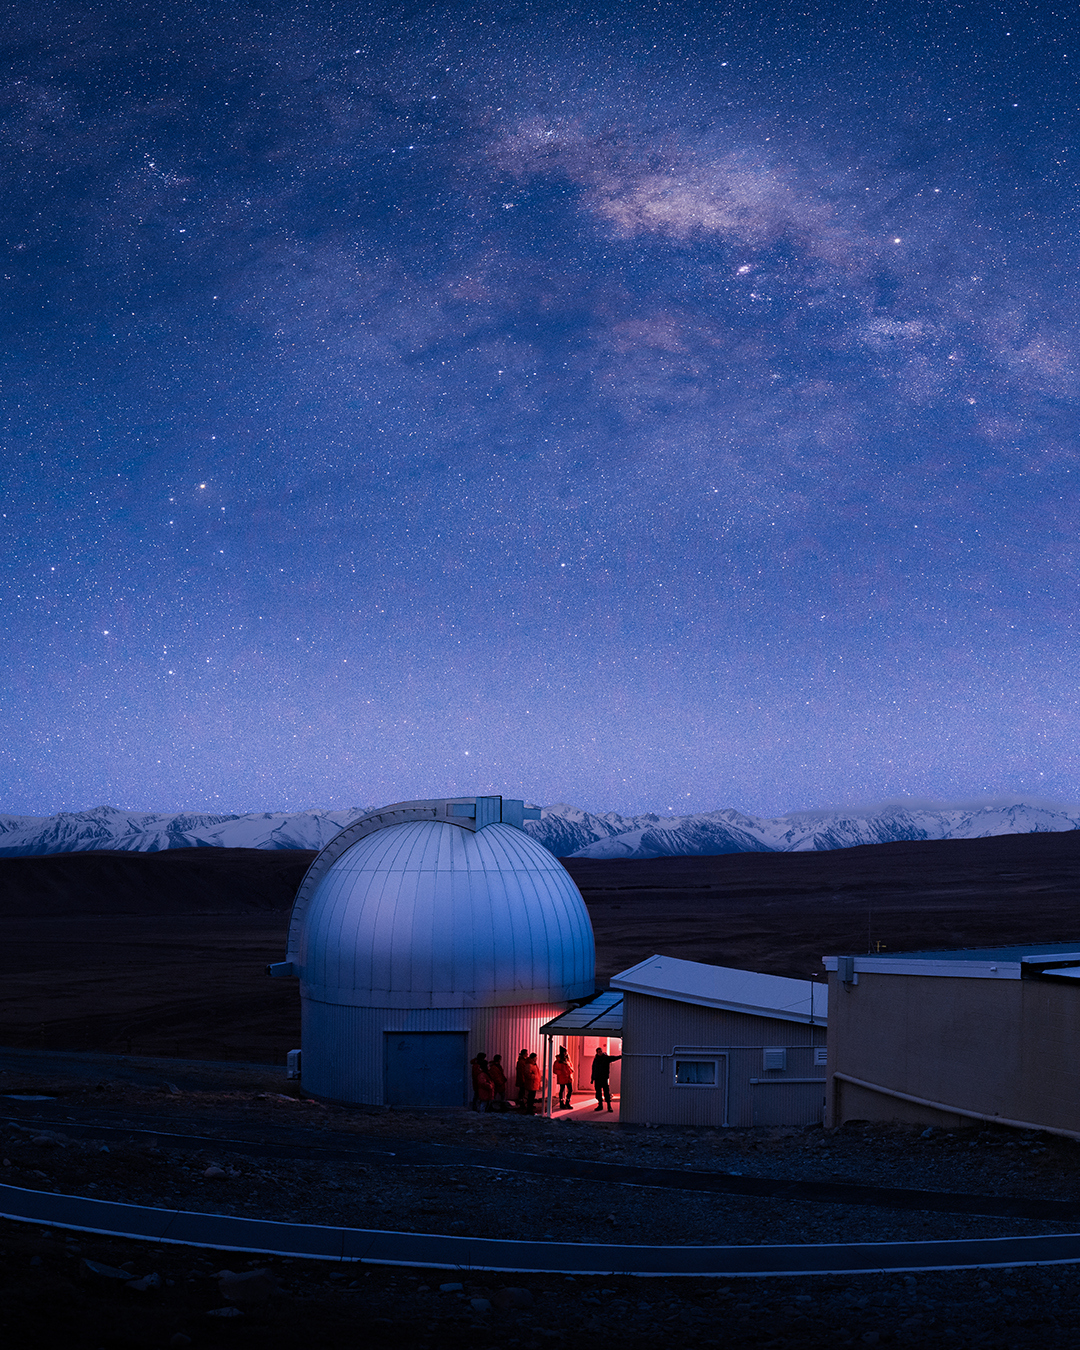 Mount John Observatory Under A Starry Night Sky